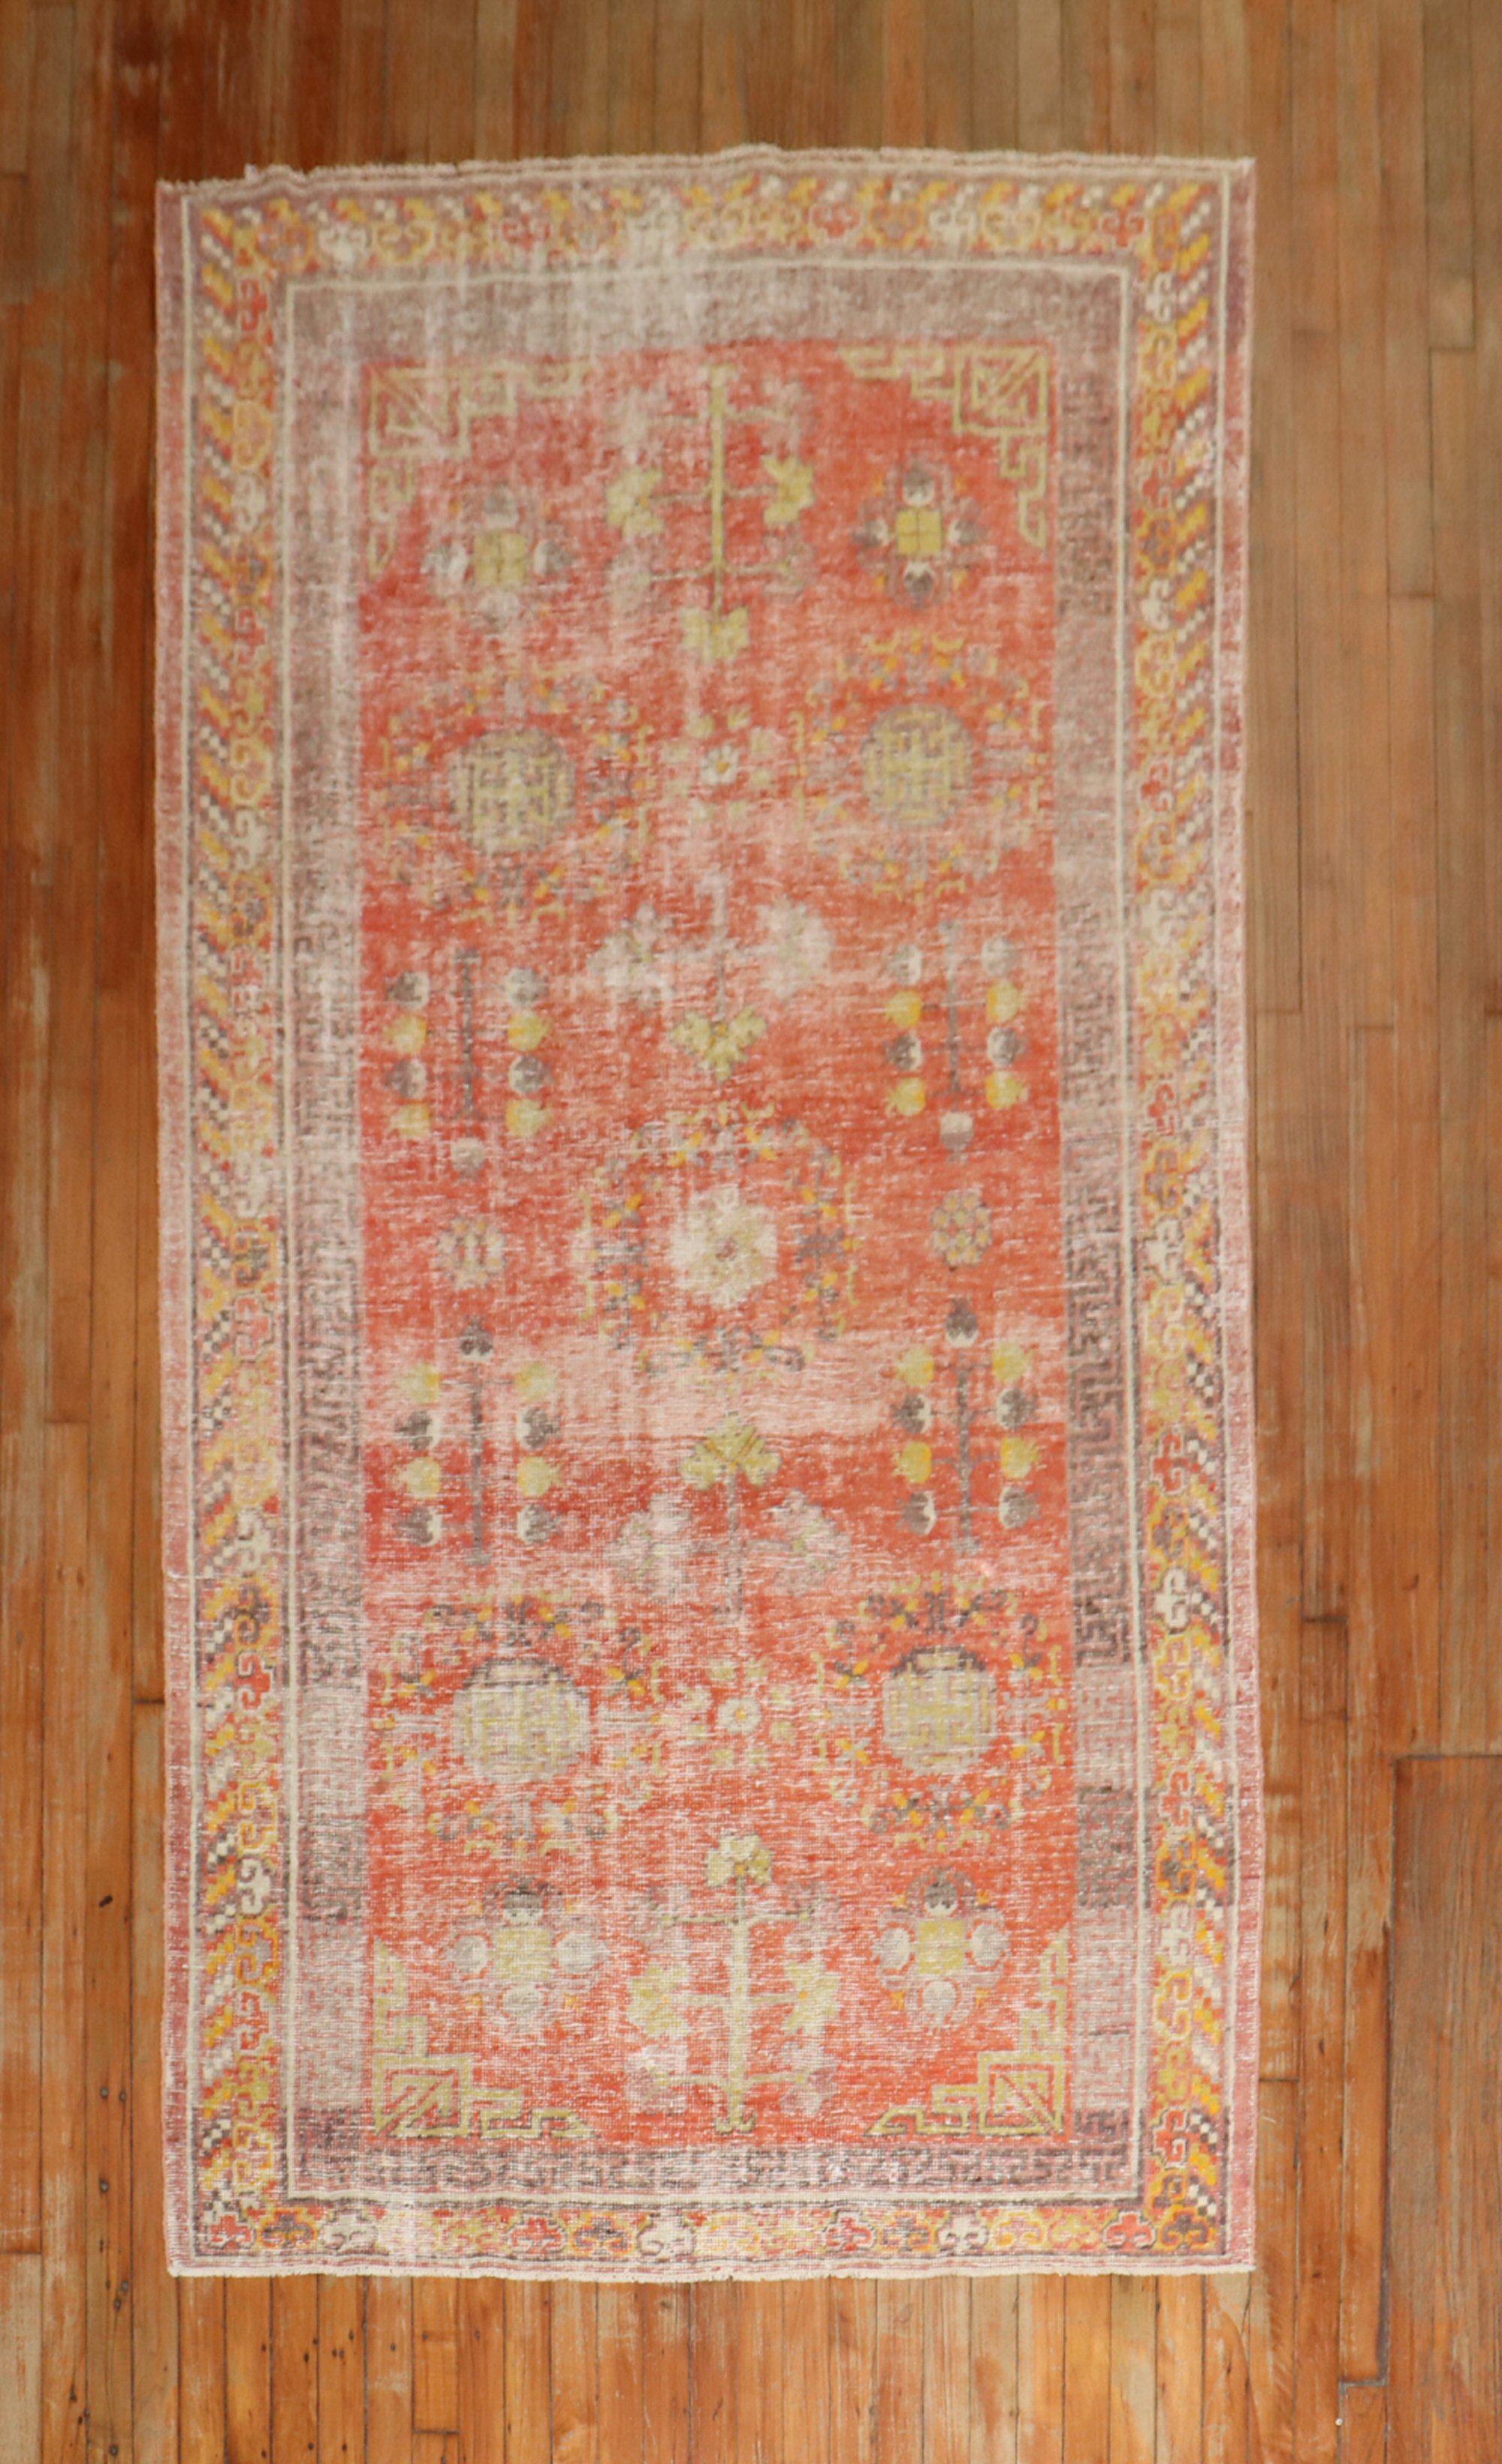 Ein antiker Khotan-Teppich aus dem frühen 20. Jahrhundert in einer vorherrschenden roten Melonenfarbe.

Maße: 4'5'' x 8'6''.